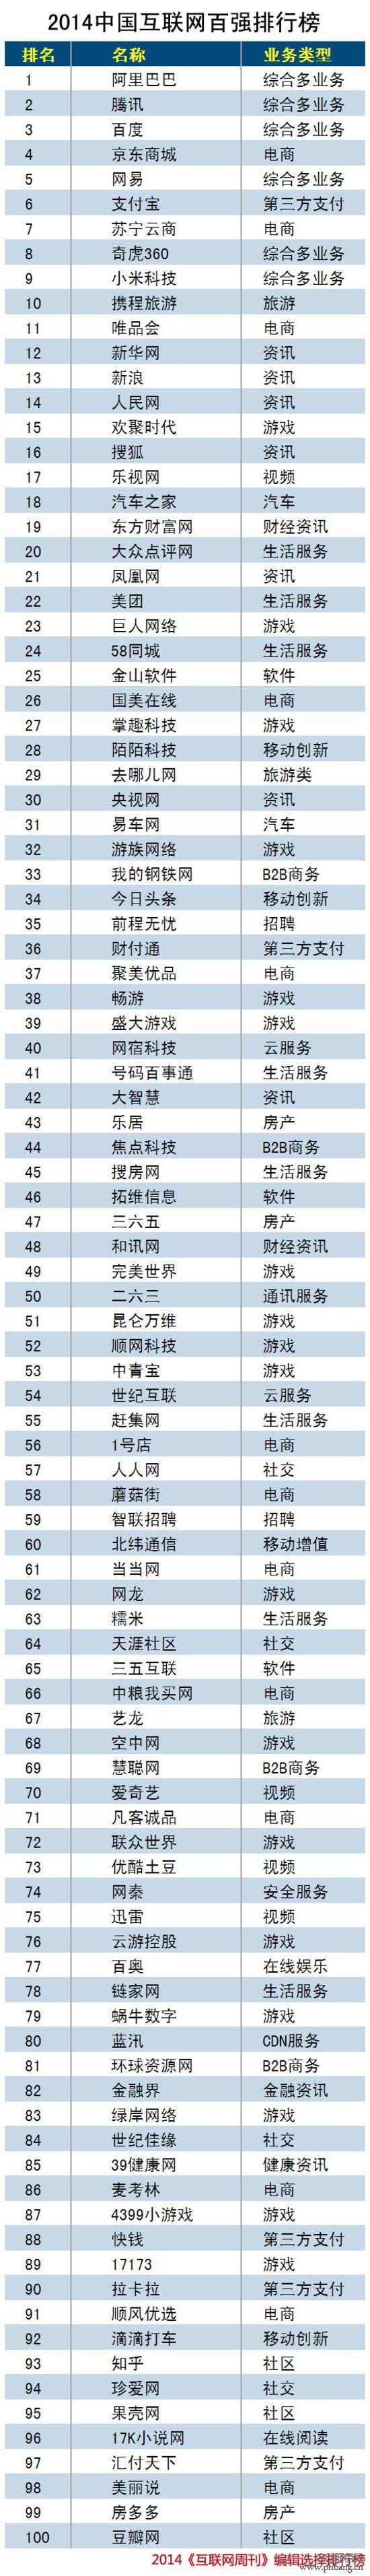 2014中国互联网百强排行榜